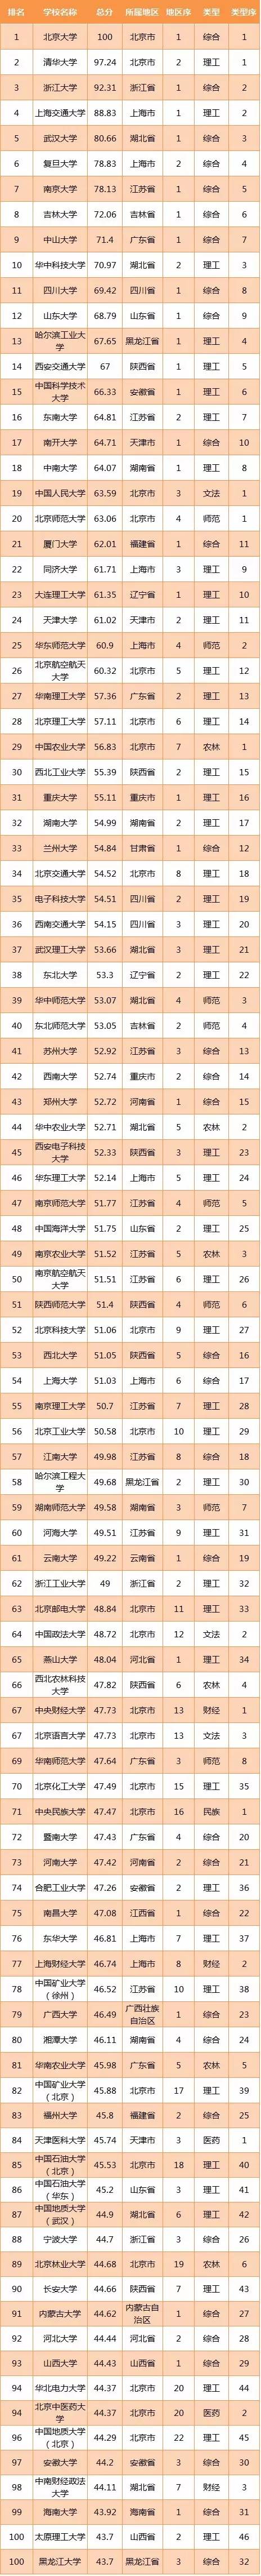 2016-2017年中国一流大学(100强)排行榜